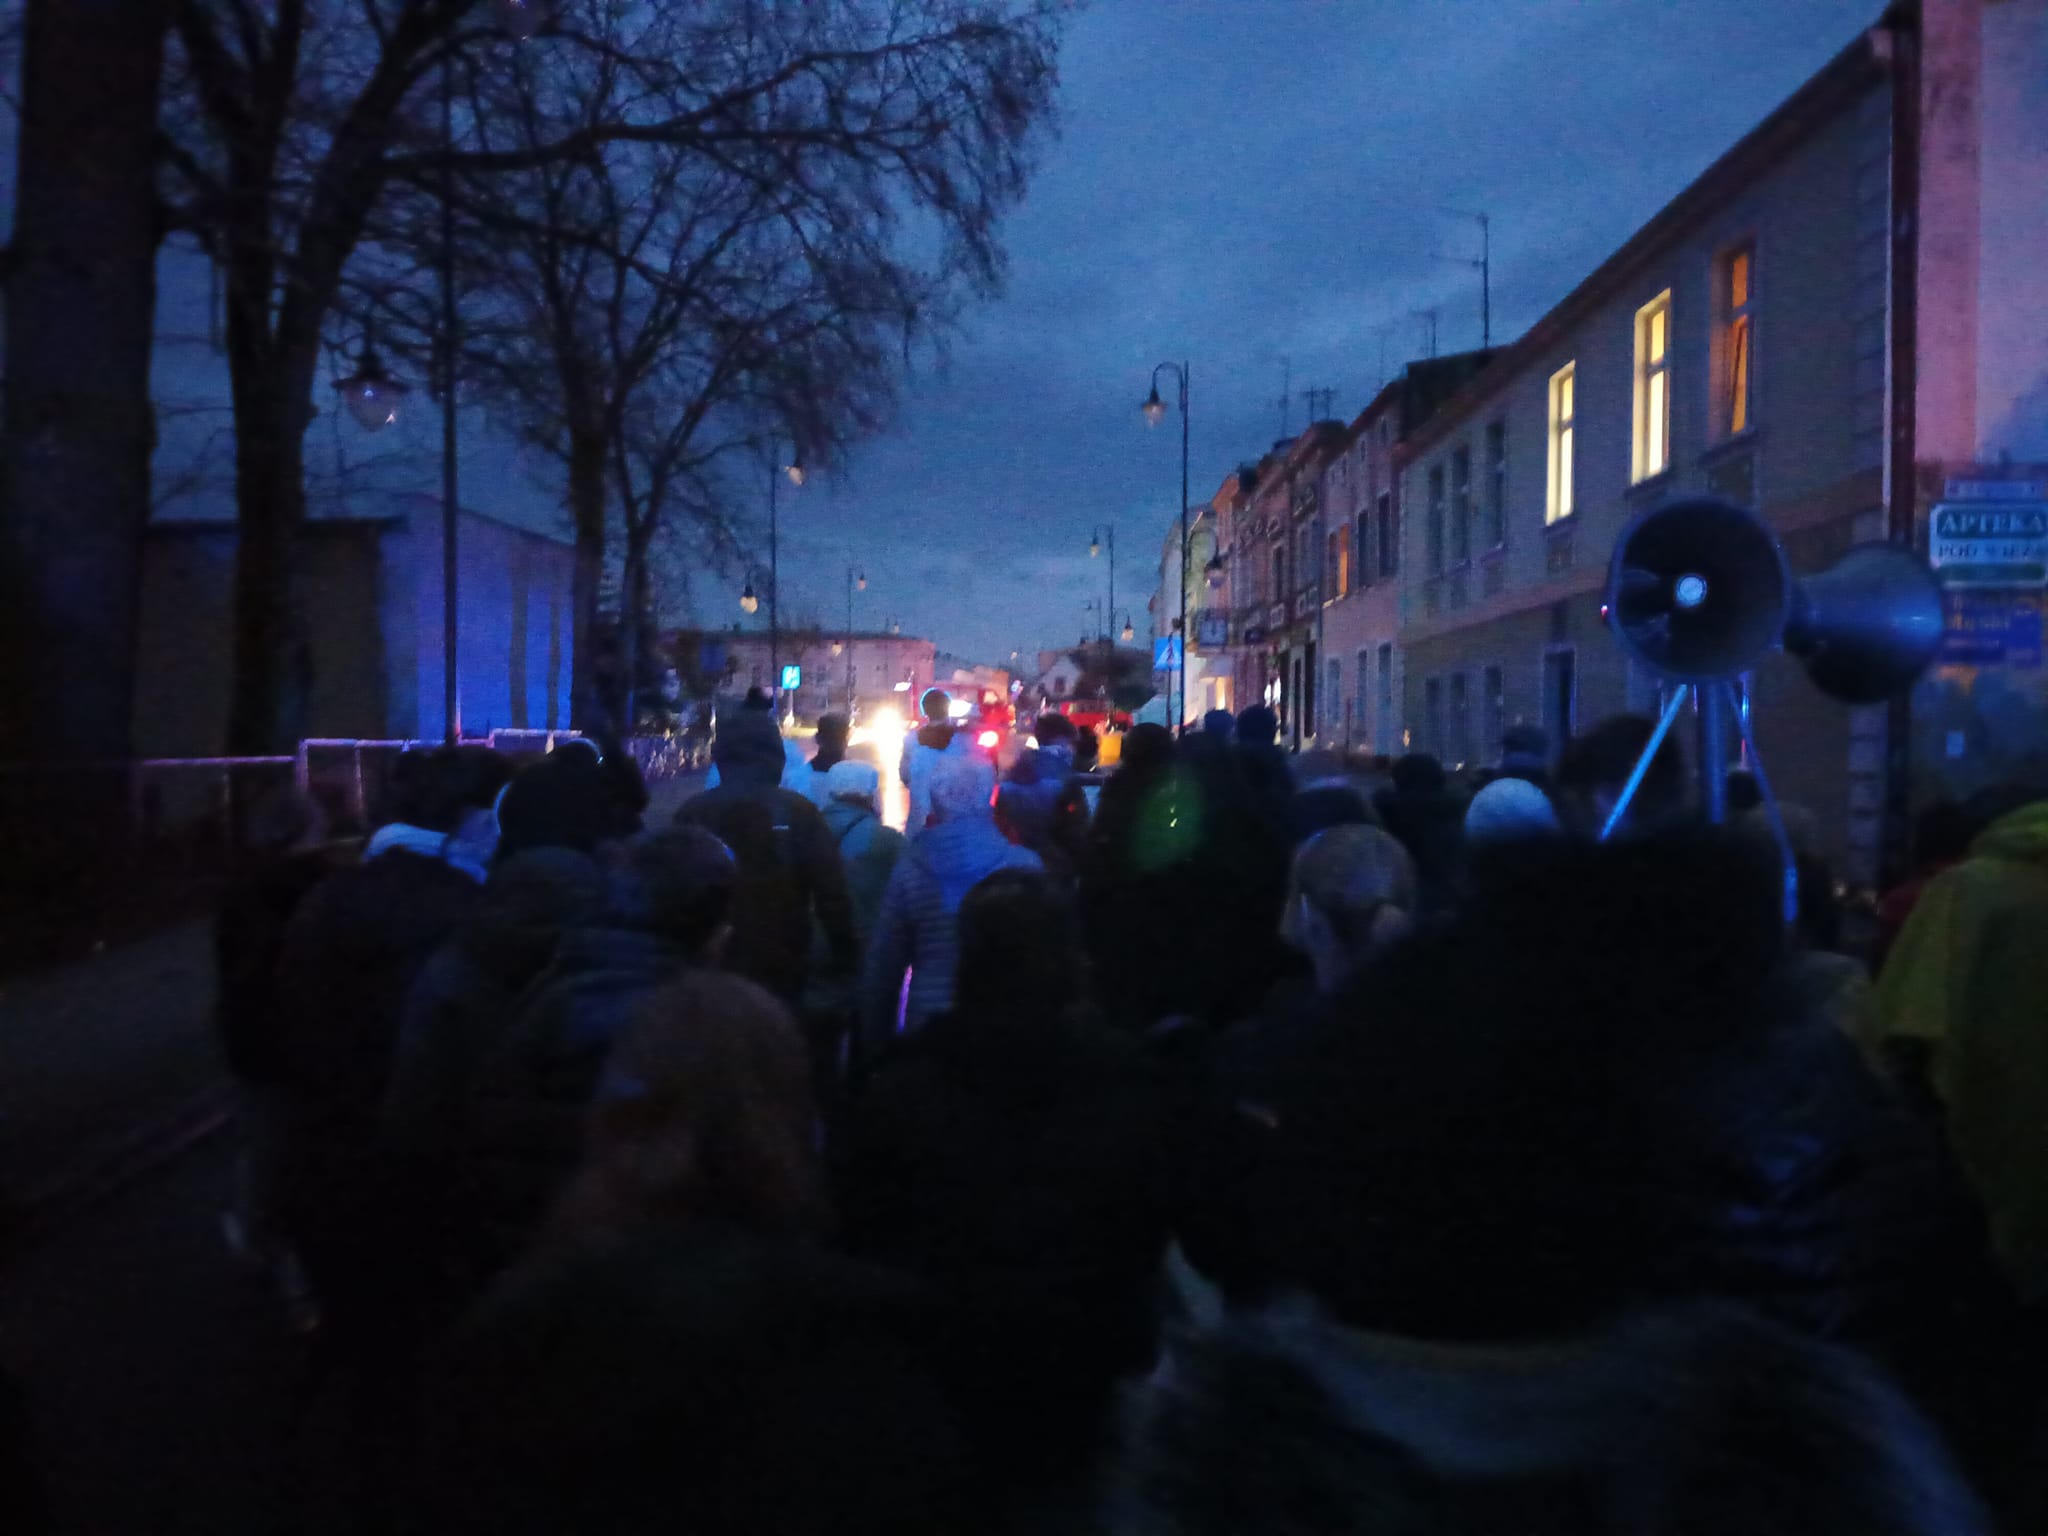 Droga Krzyżowa przeszła dziś ulicami Więcborka. Photo - Tomasz Roman Bracka